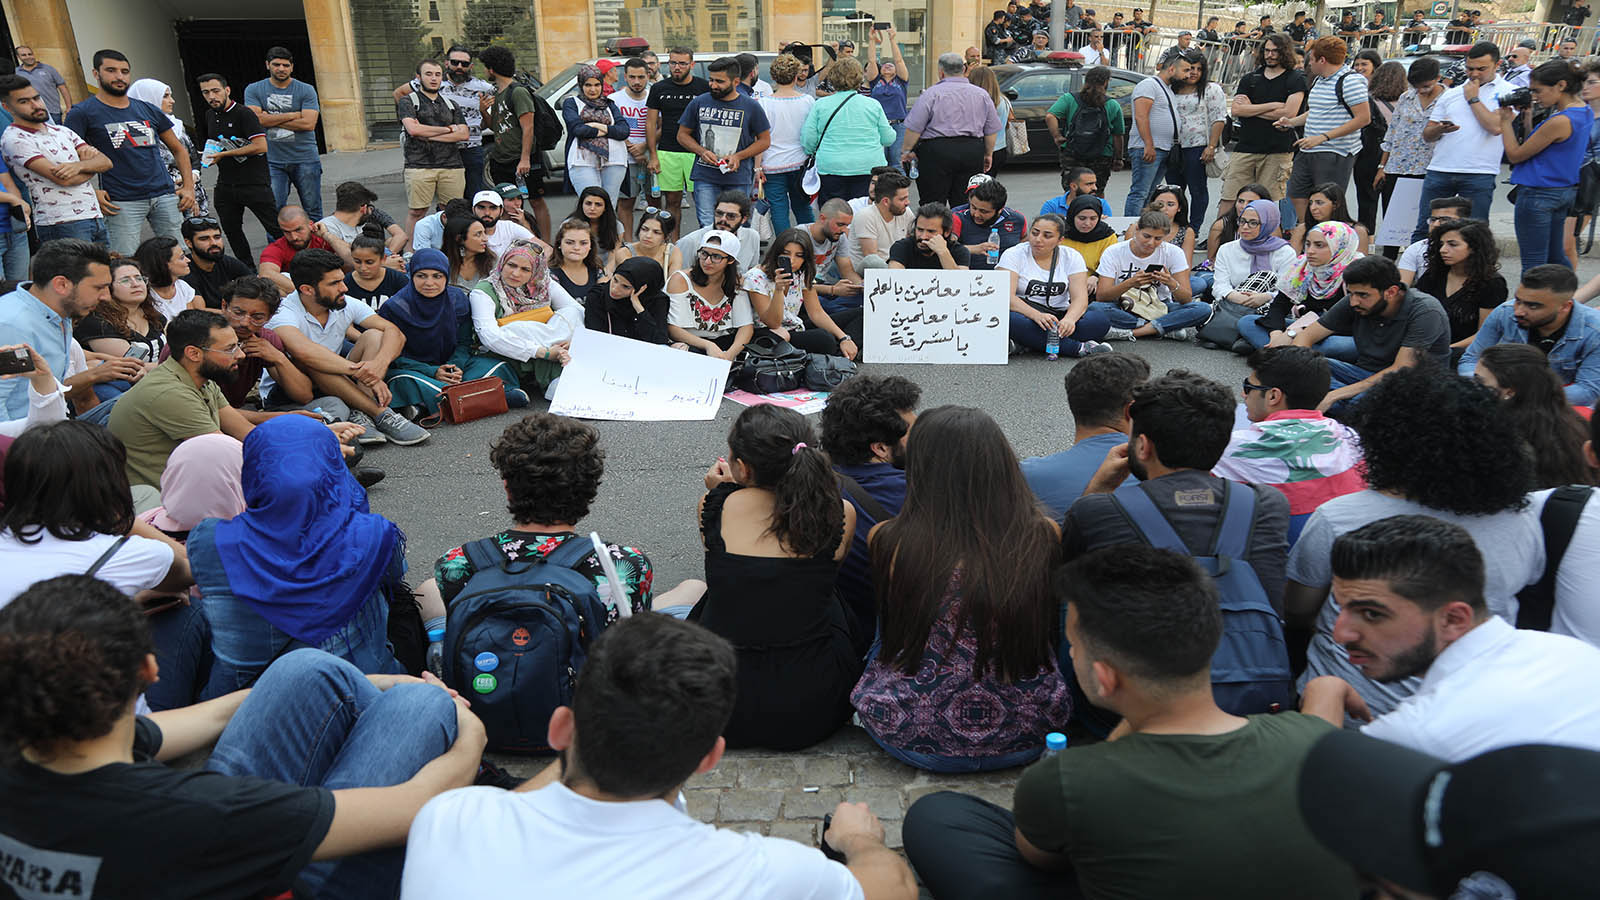 بعد الترهيب: عشاء ترغيبي لأساتذة "اللبنانية" لفك الإضراب